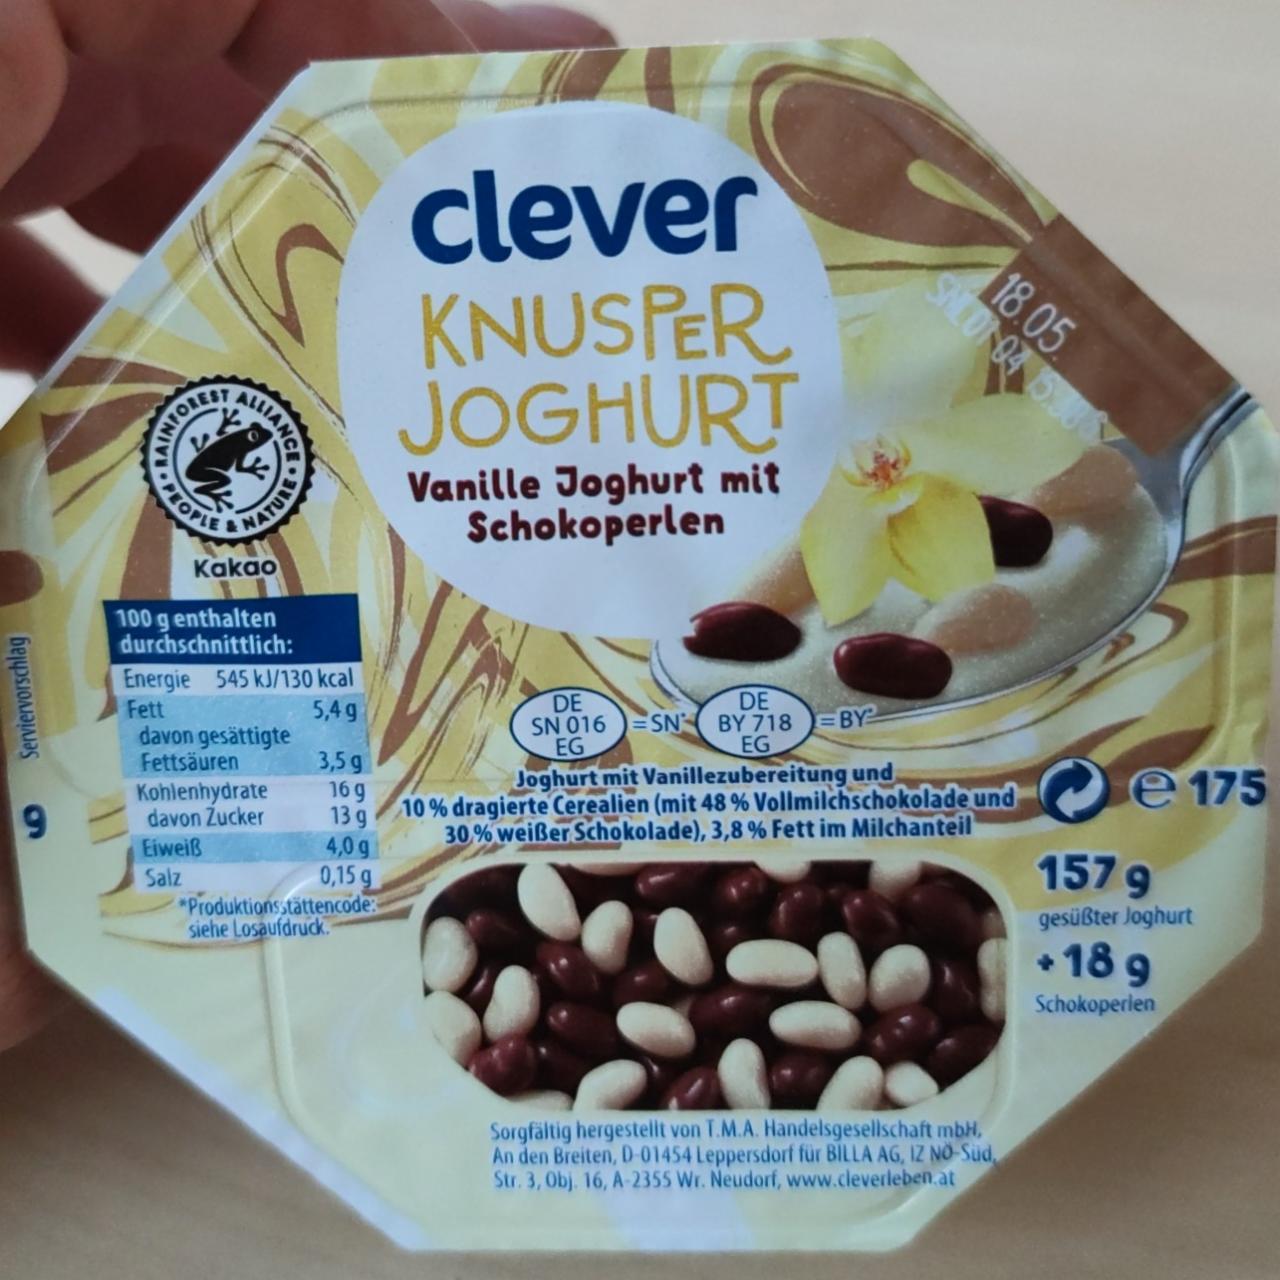 Fotografie - Knusper Joghurt vanille joghurt mit Schokoperlen Clever